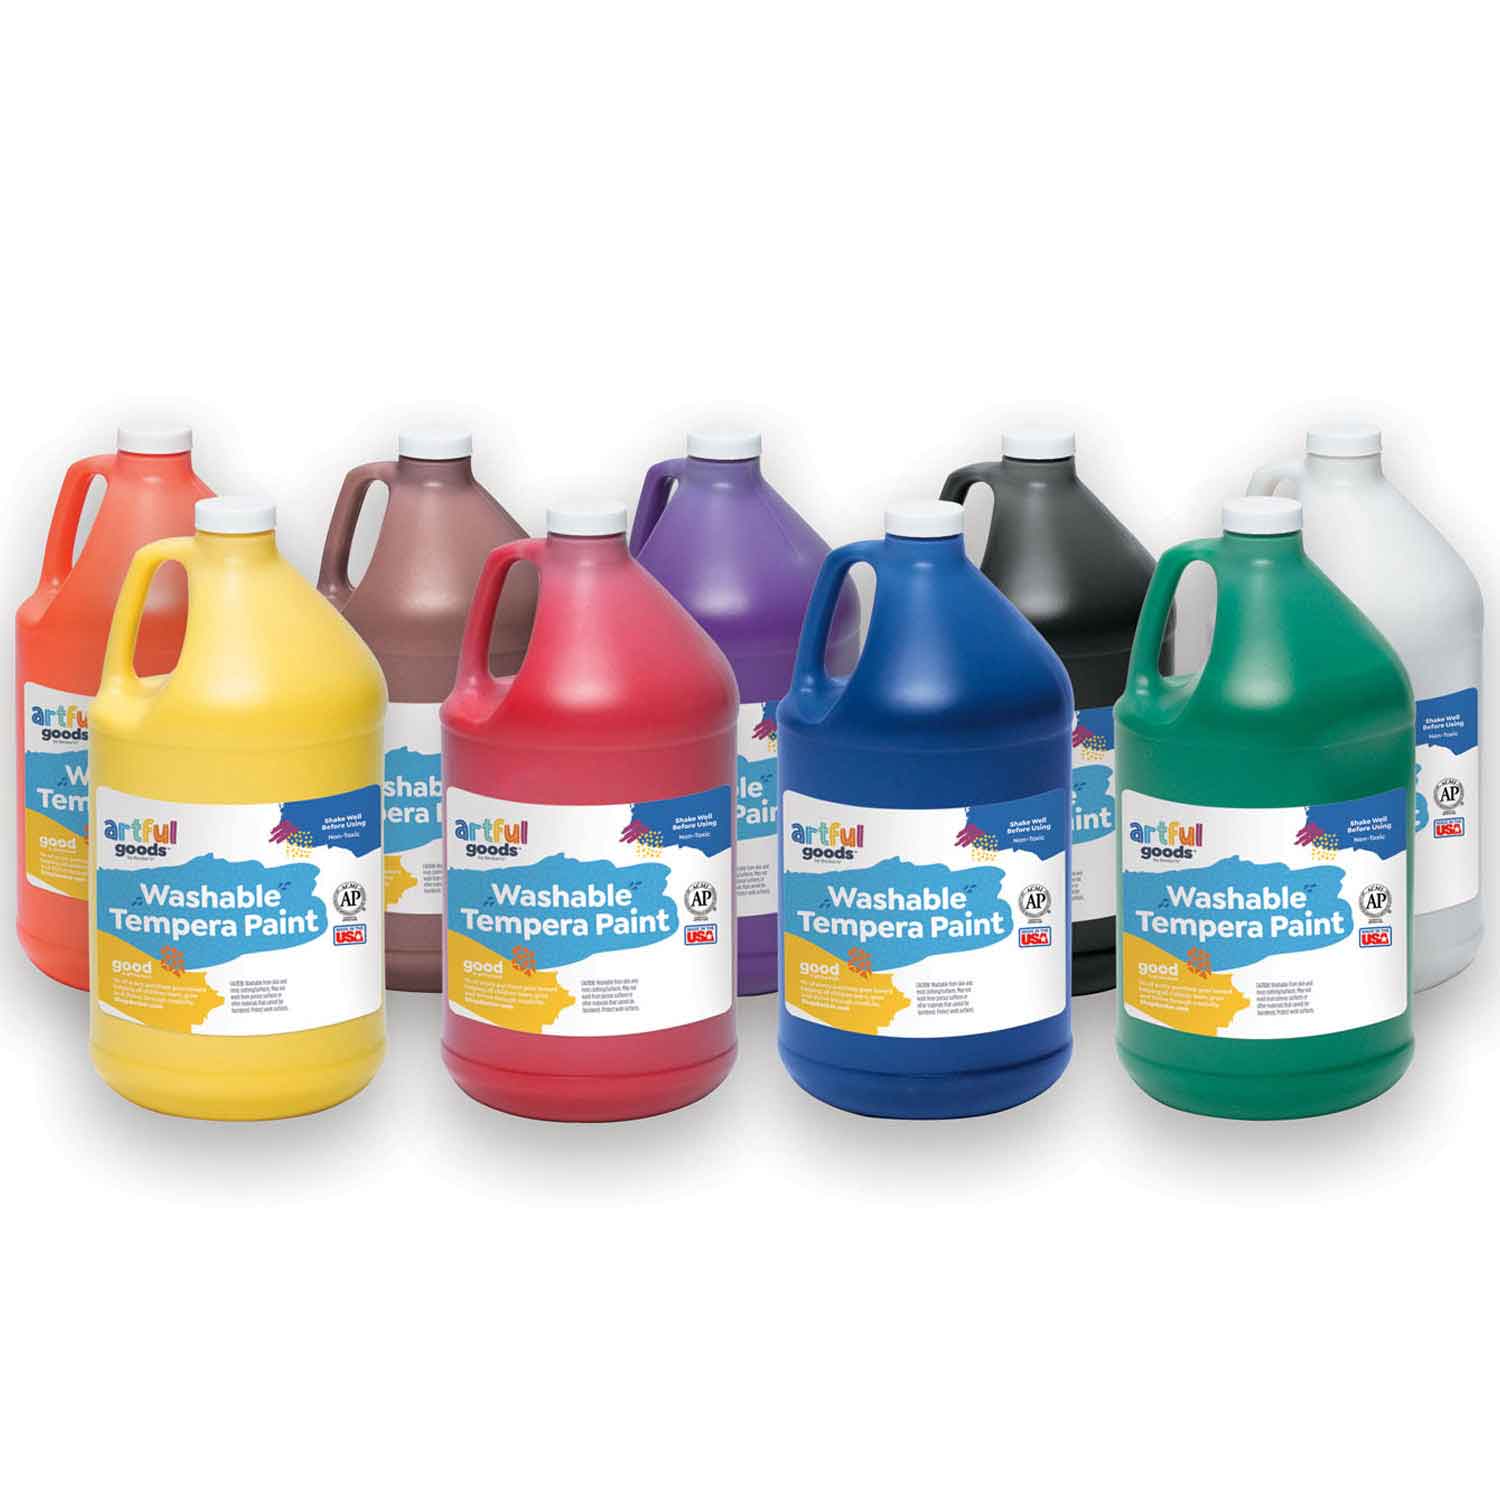 Artful Goods® Washable Paint Gallon Set